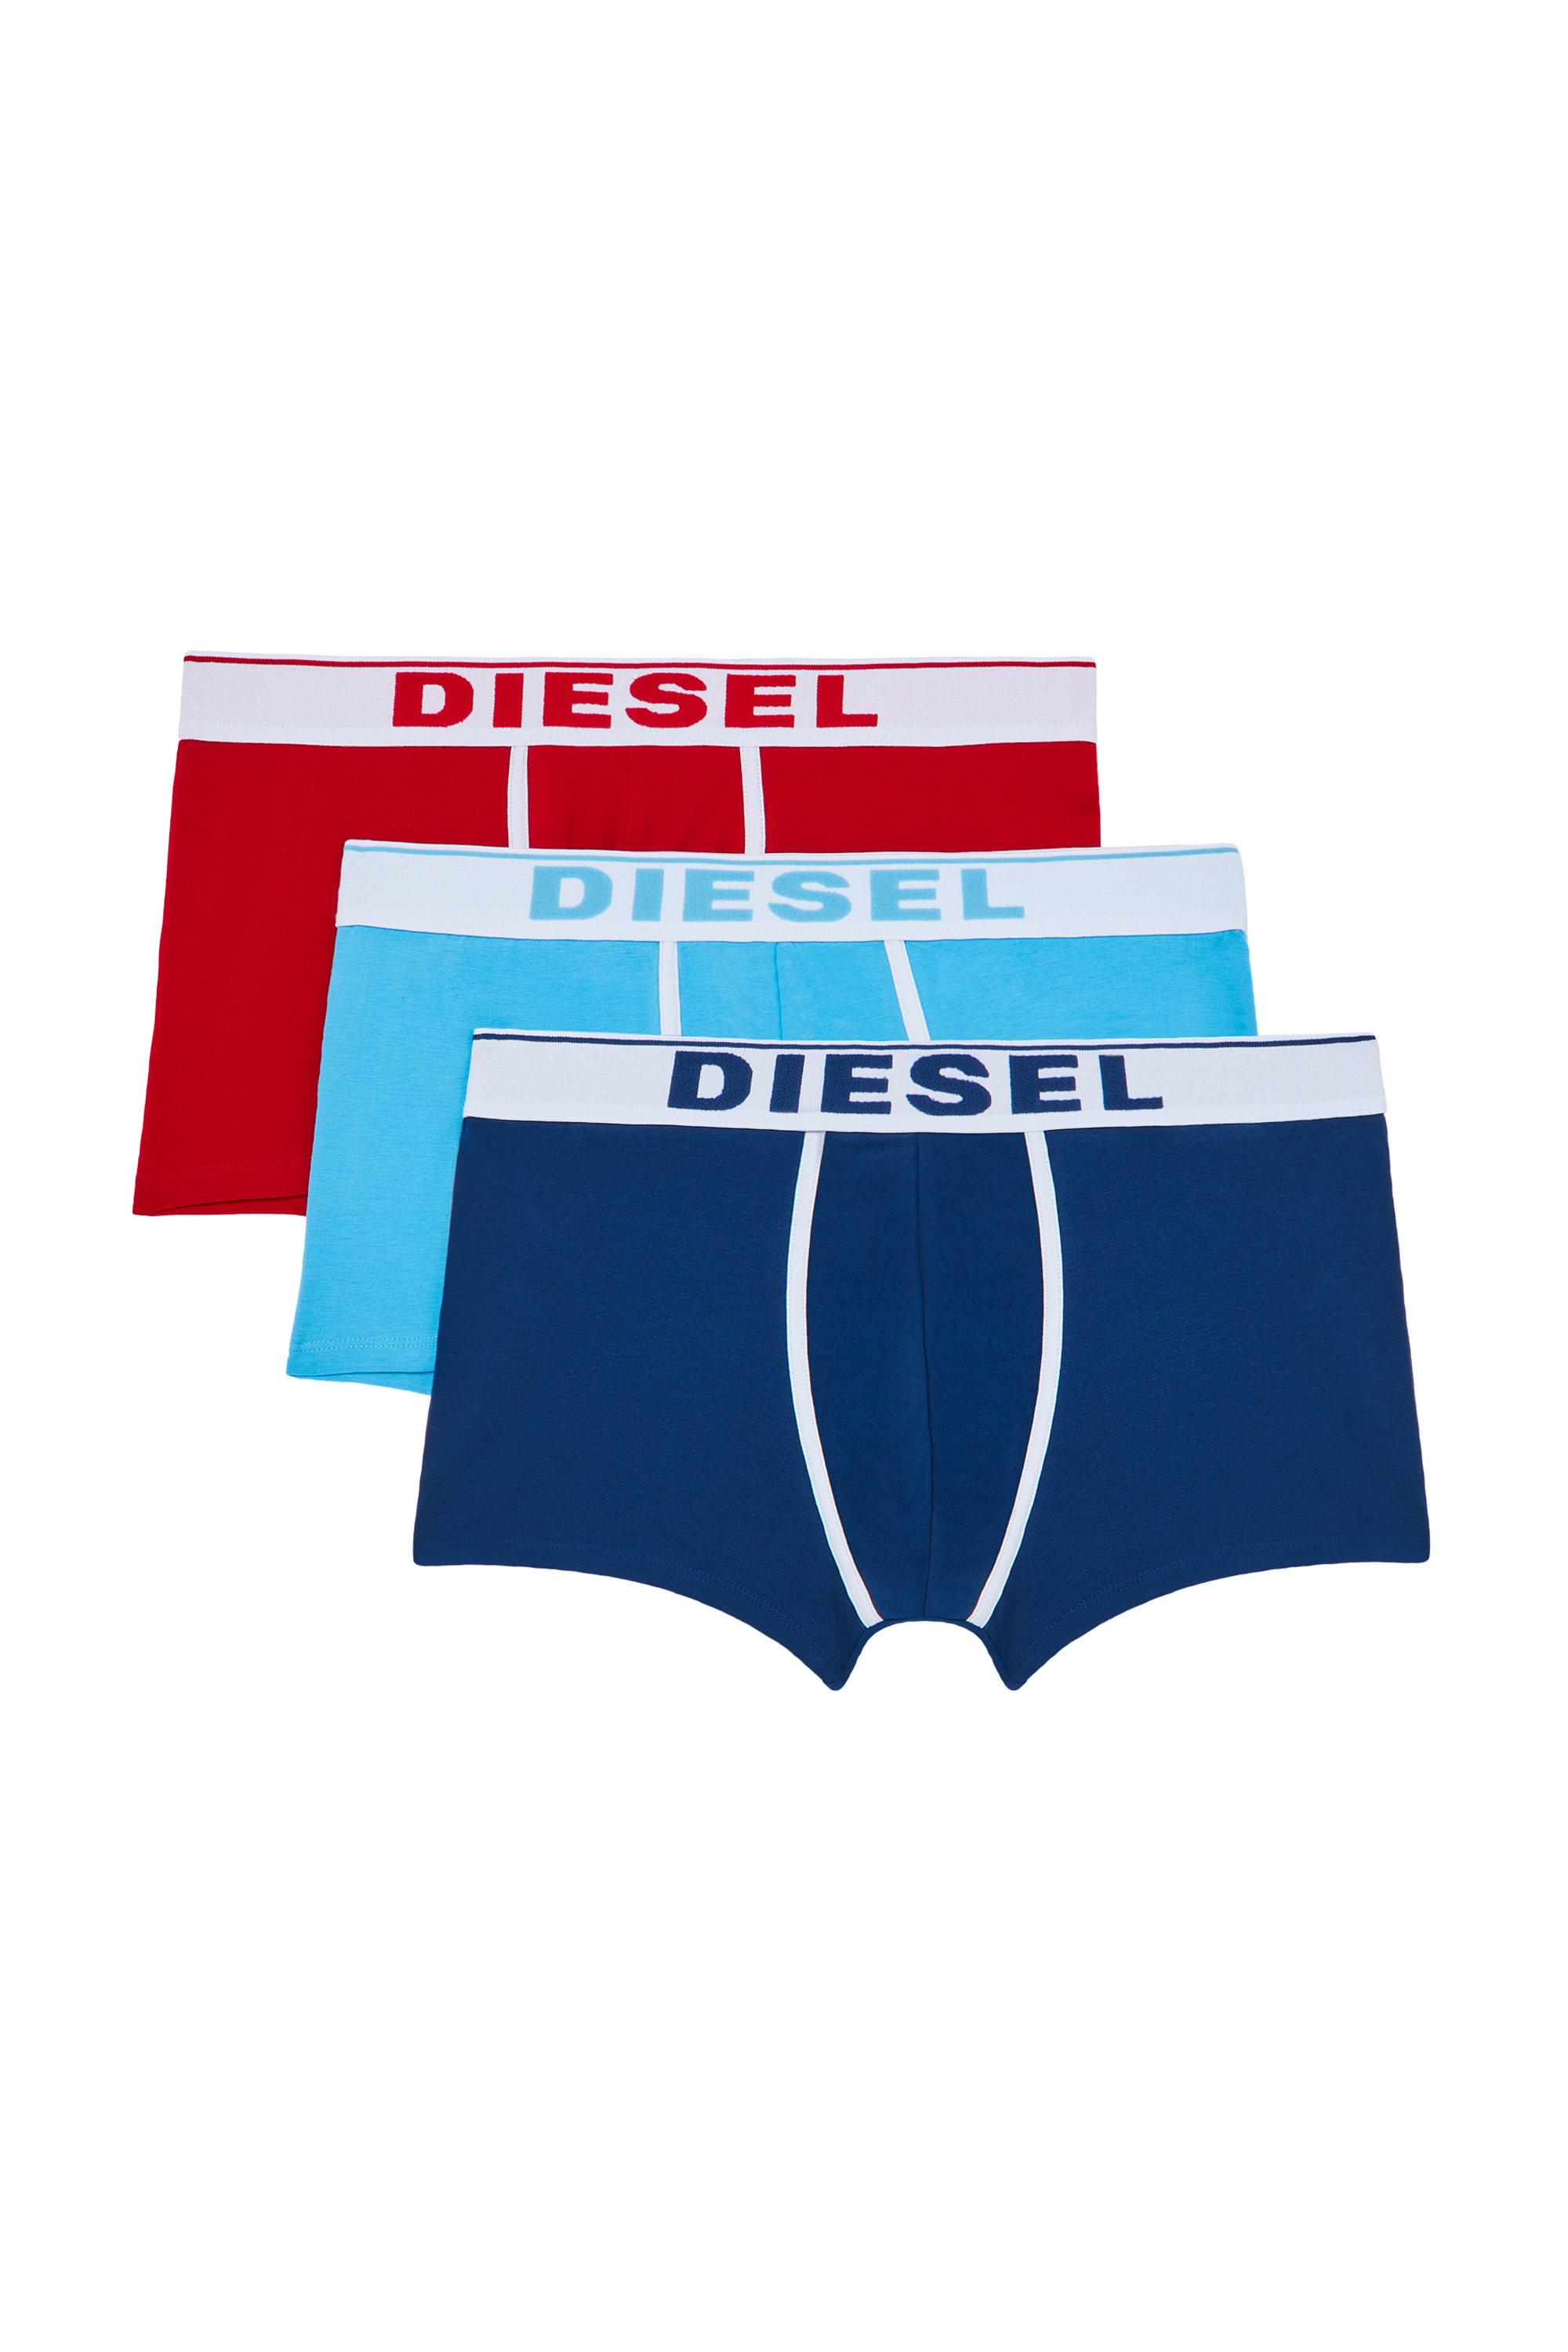 Diesel - UMBX-DAMIENTHREEPACK, Red/Blue - Image 1